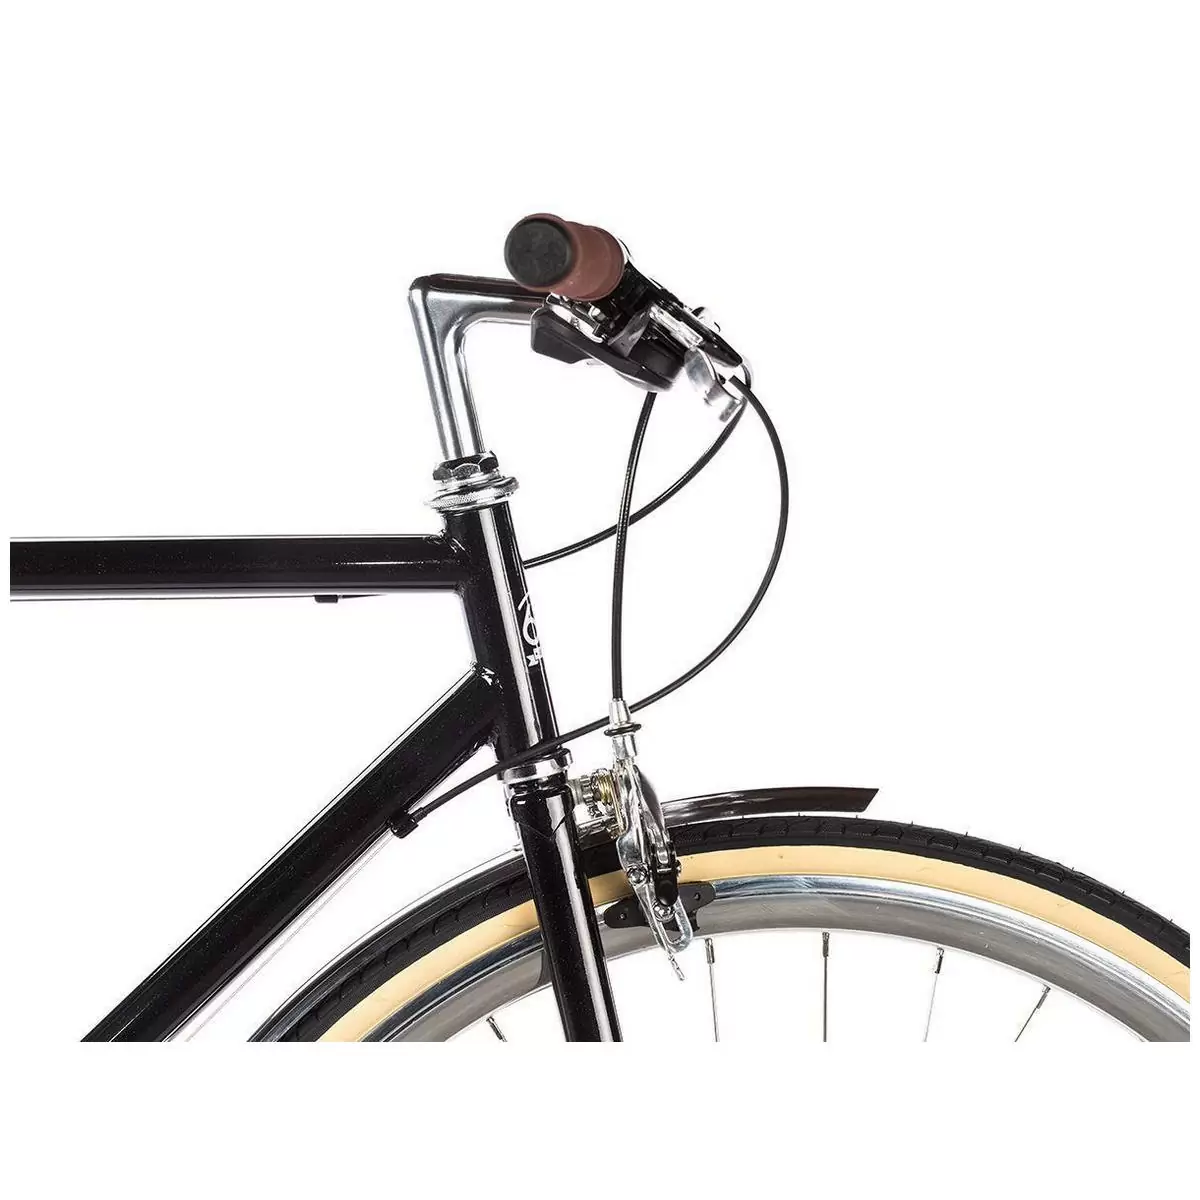 City bike ODYSSEY 8spd Delano black medium 54cm #3